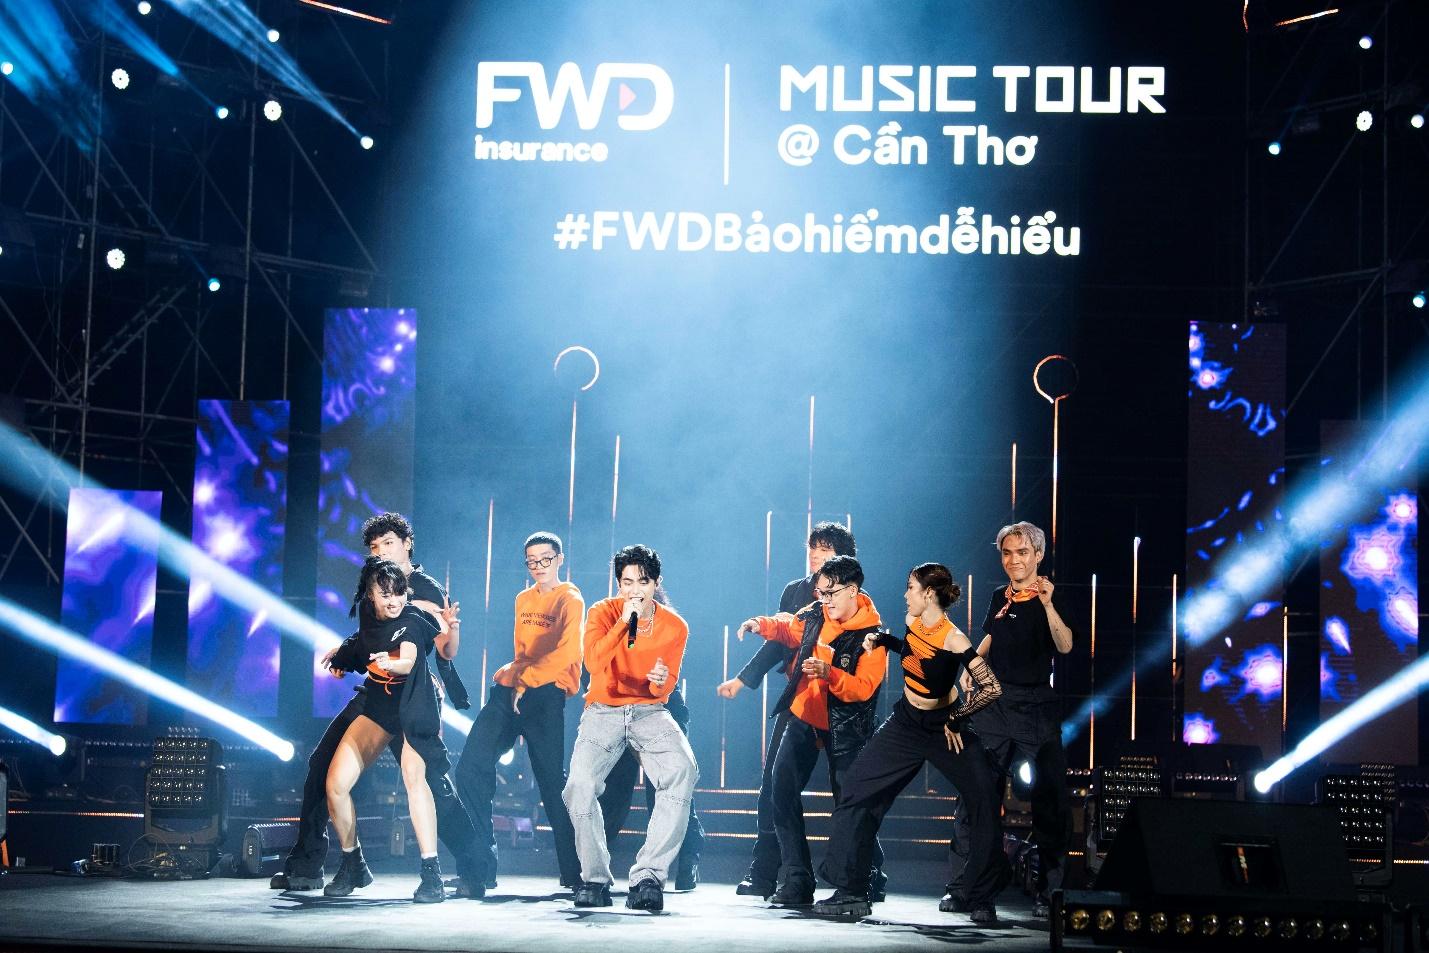 Bất ngờ với con số hơn 23 triệu lượt xem trên nền tảng TikTok của FWD Music Tour - Ảnh 1.